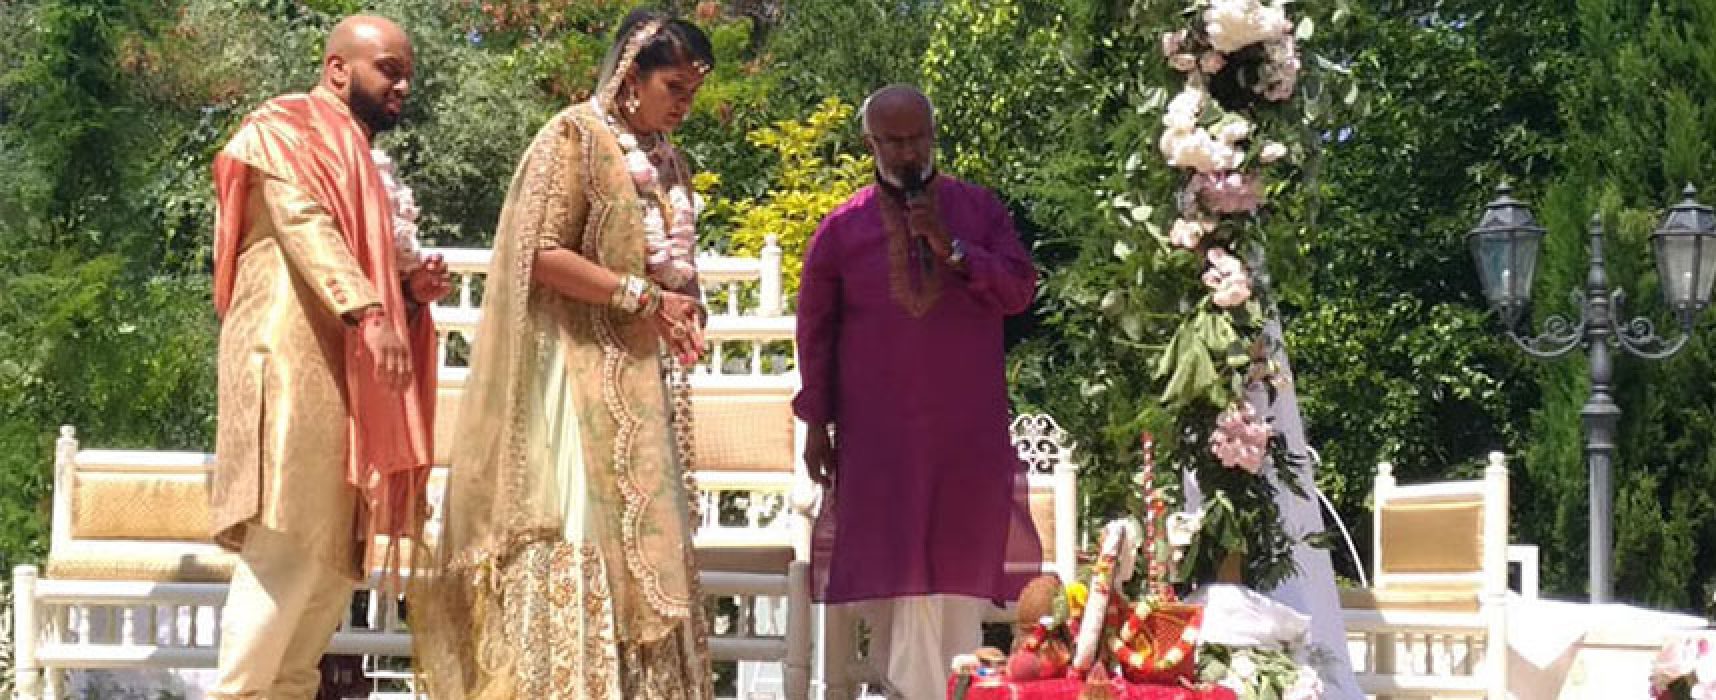 Colori, tradizioni e riti. Bisceglie location di un matrimonio indiano